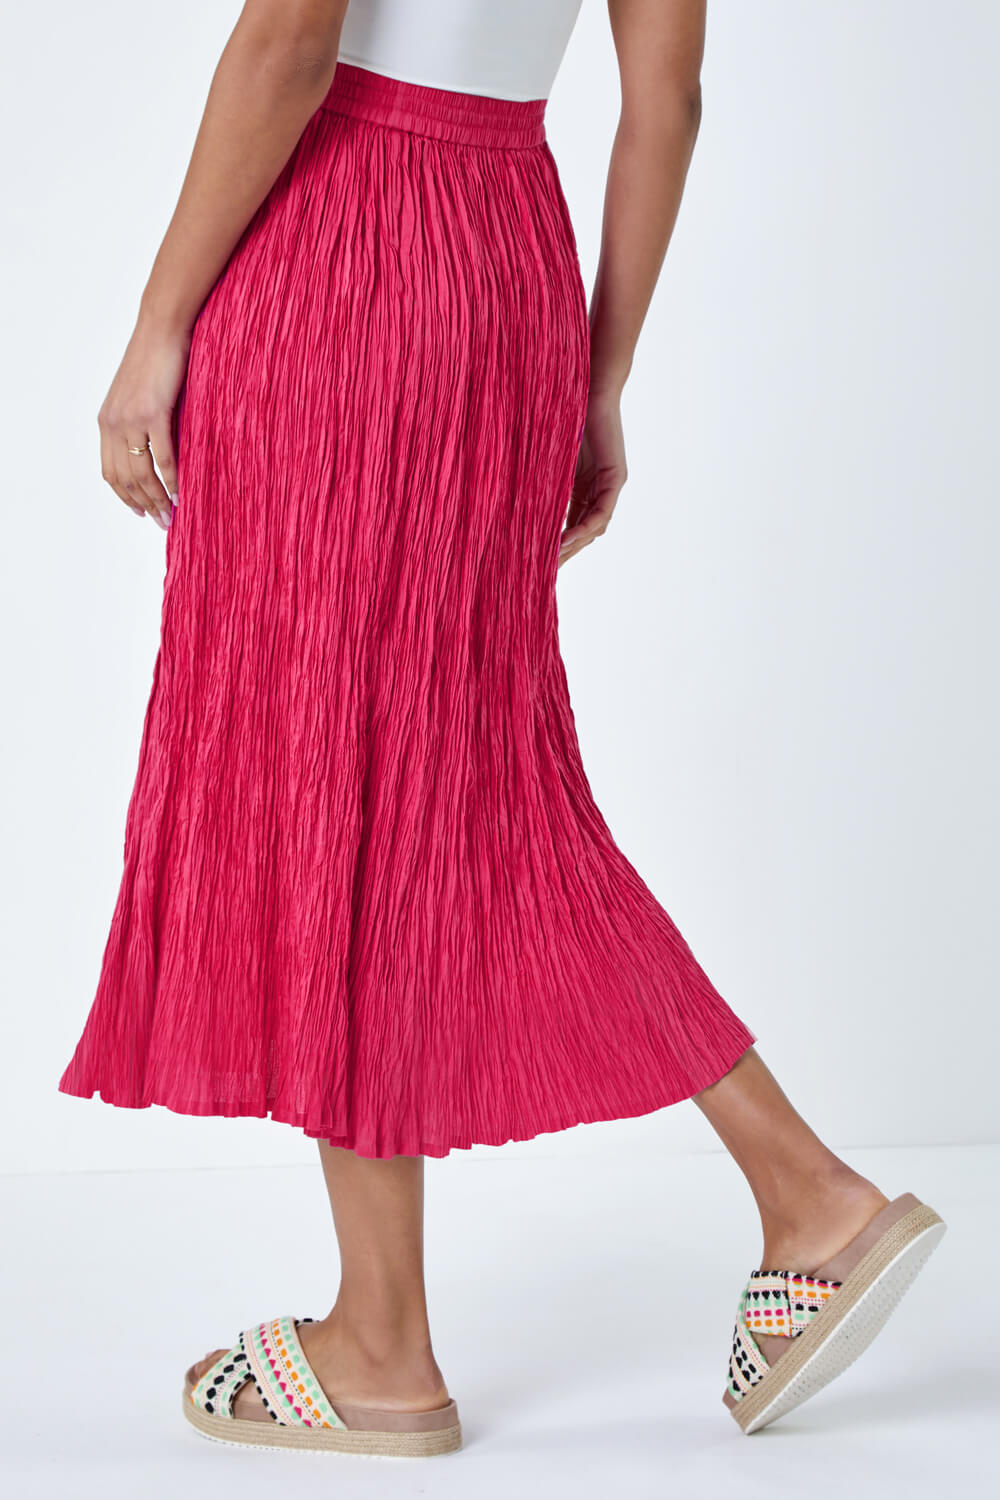 PINK Crinkle Cotton Textured Tassel Midi Skirt, Image 3 of 5